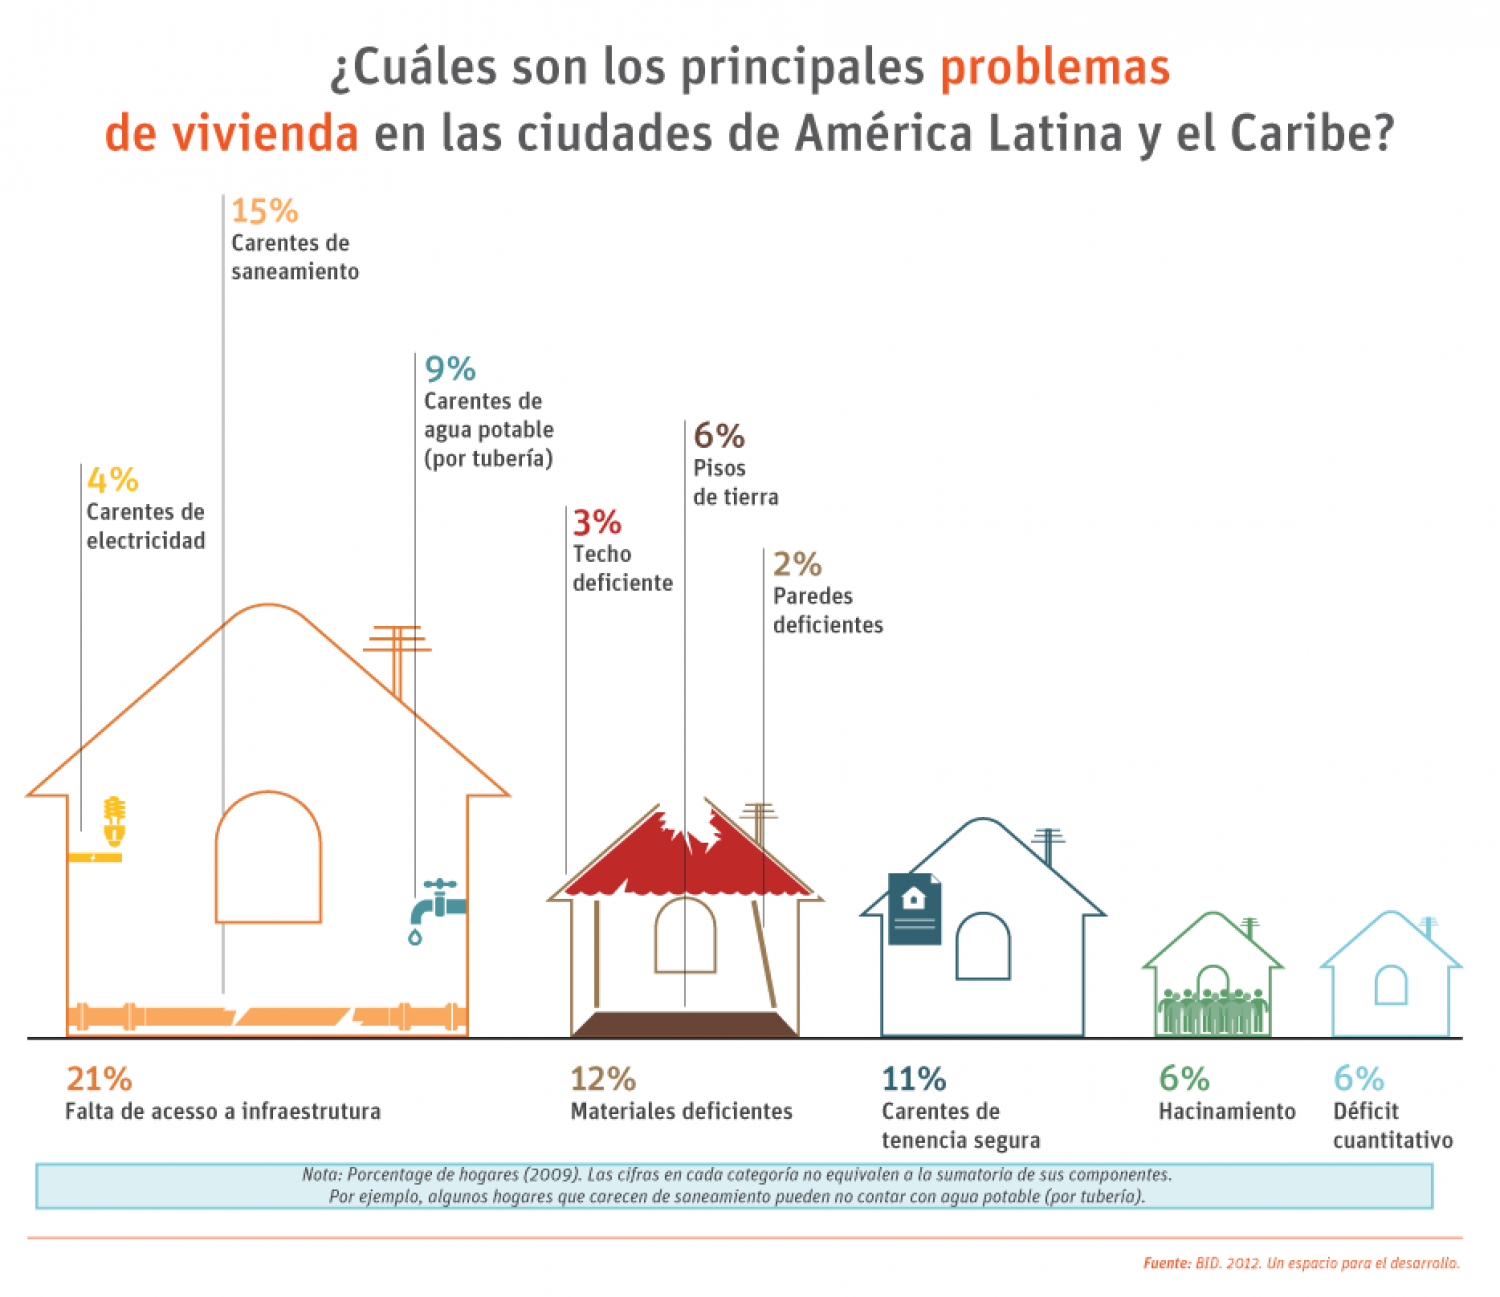 Cuáles son los principales problemas de vivienda en la ciudades de América Latina y el Caribe? Infographic